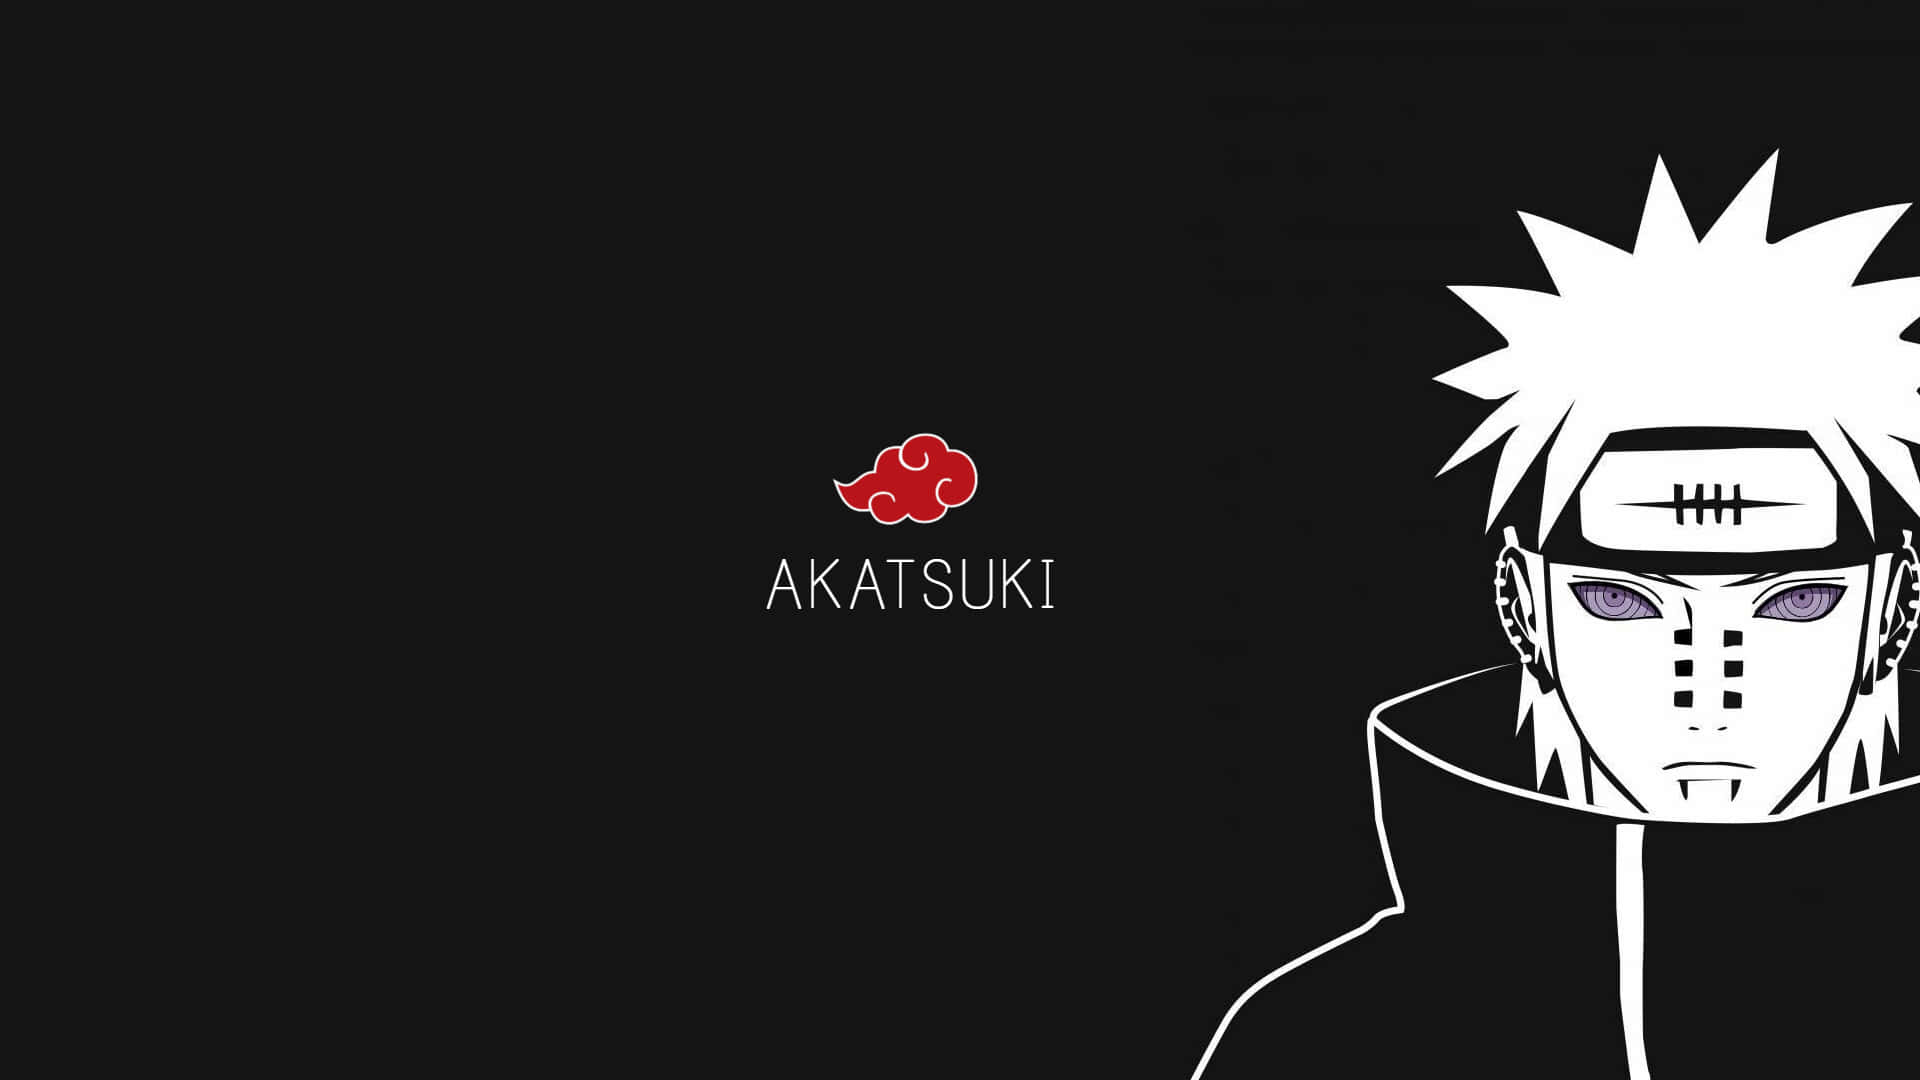 Werdensie Mitglied Der Akatsuki Und Entfesseln Sie Ihre Innere Kraft.